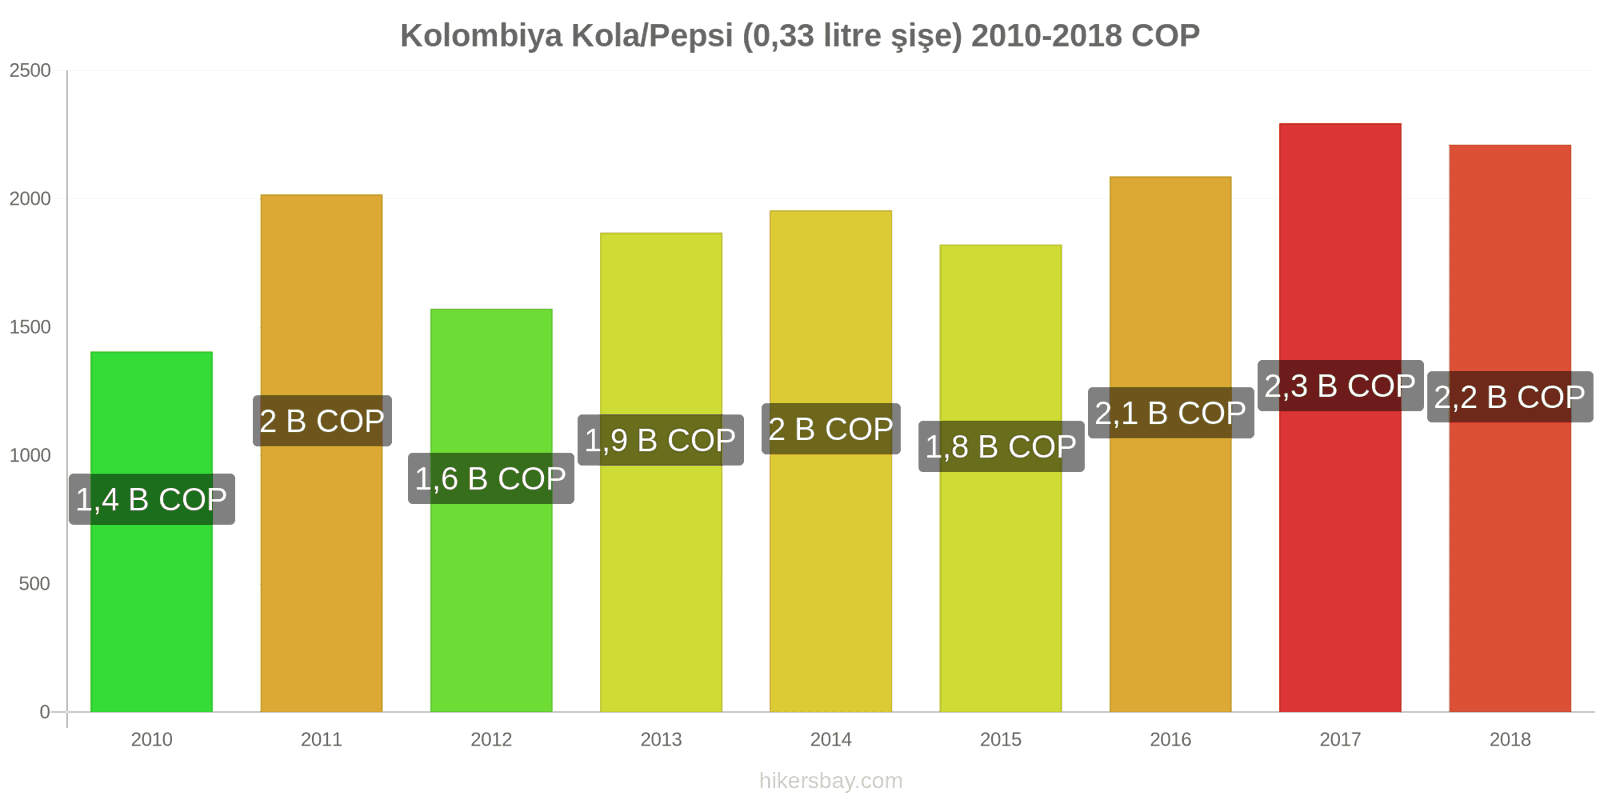 Kolombiya fiyat değişiklikleri Kola/Pepsi (0.33 litre şişe) hikersbay.com